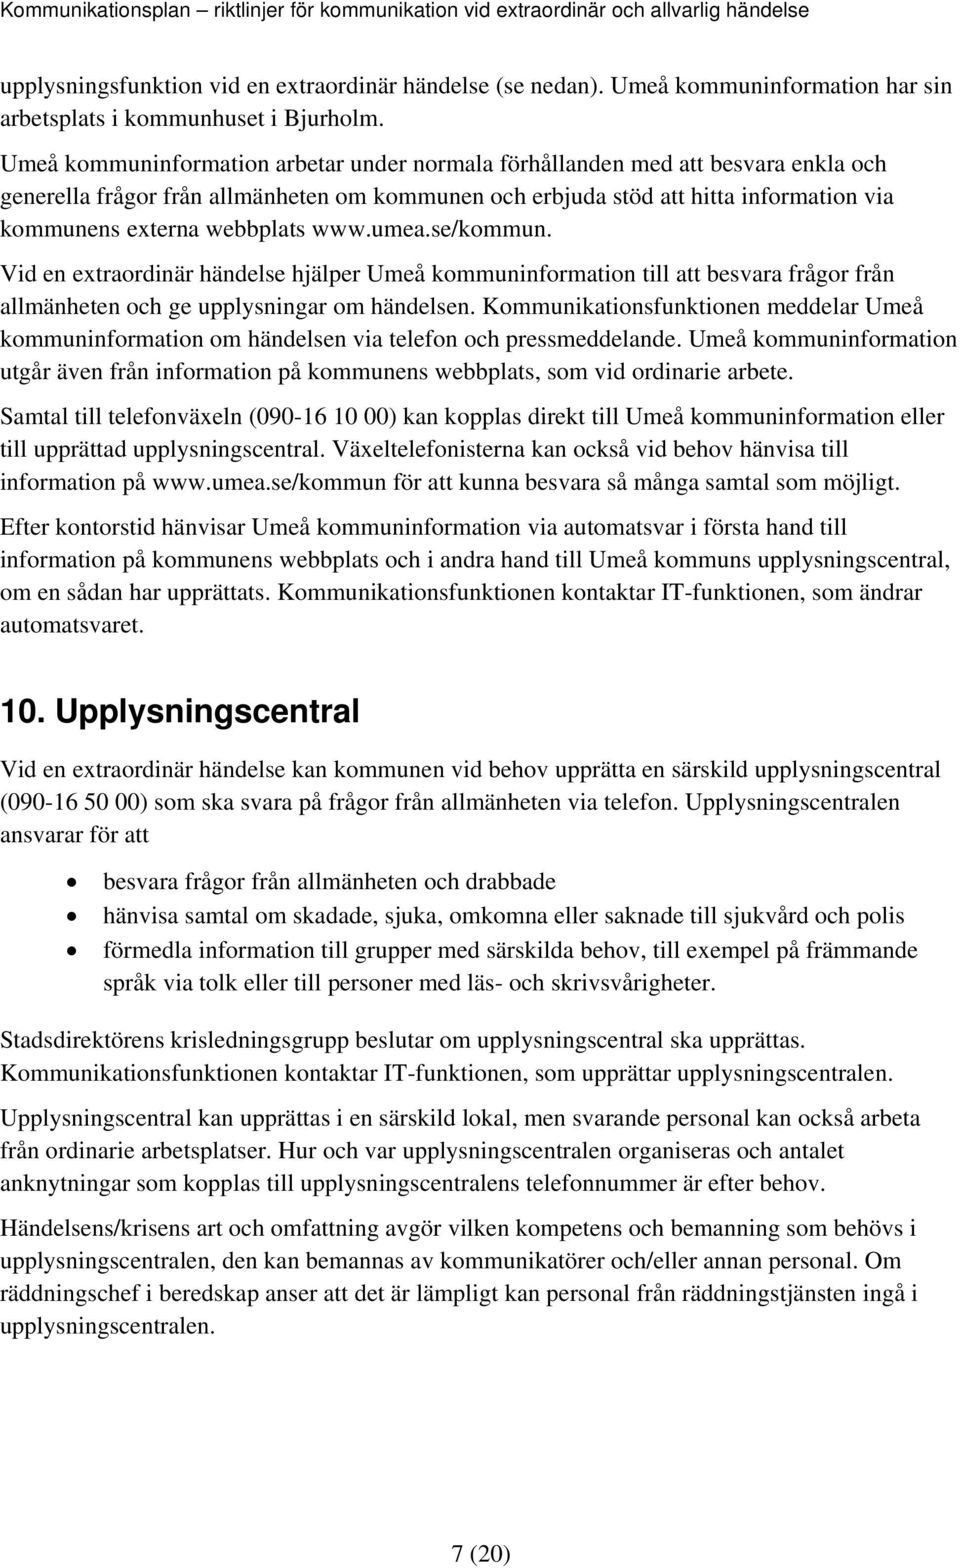 webbplats www.umea.se/kommun. Vid en extraordinär händelse hjälper Umeå kommuninformation till att besvara frågor från allmänheten och ge upplysningar om händelsen.